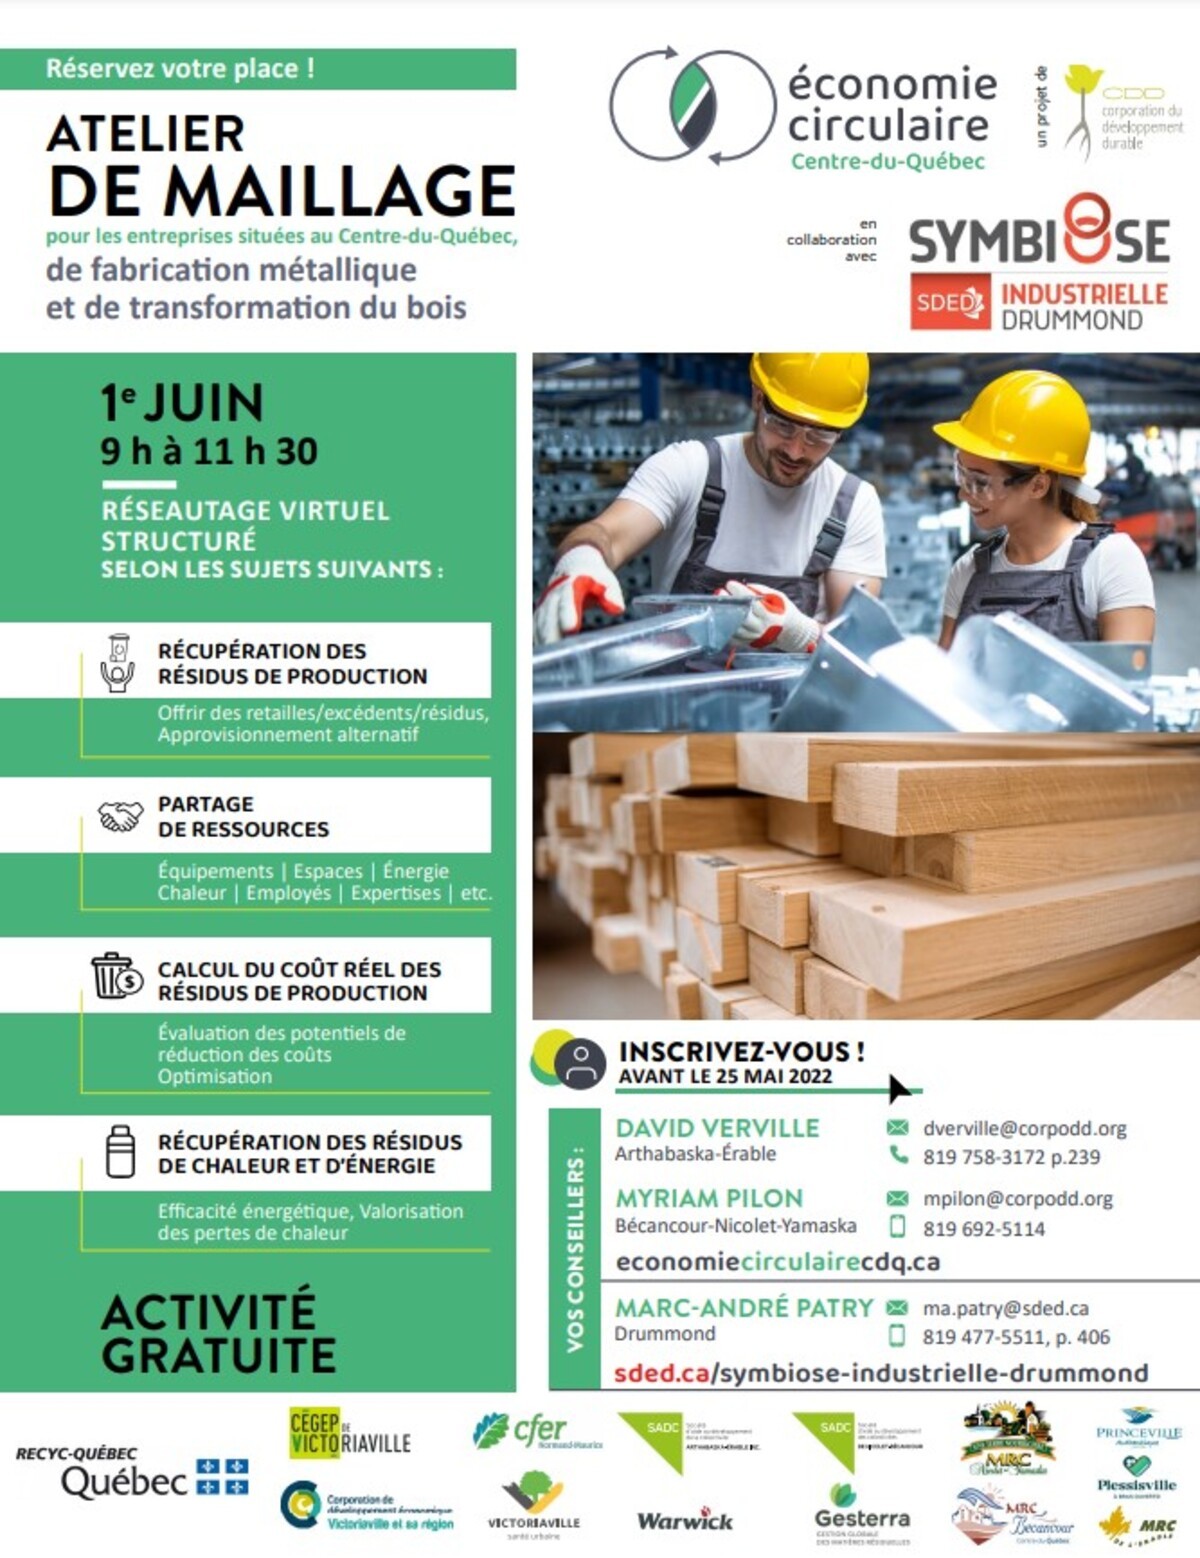 Atelier de maillage pour les entreprises de fabrication métallique et de transformation du bois situées Centre-du-Québec